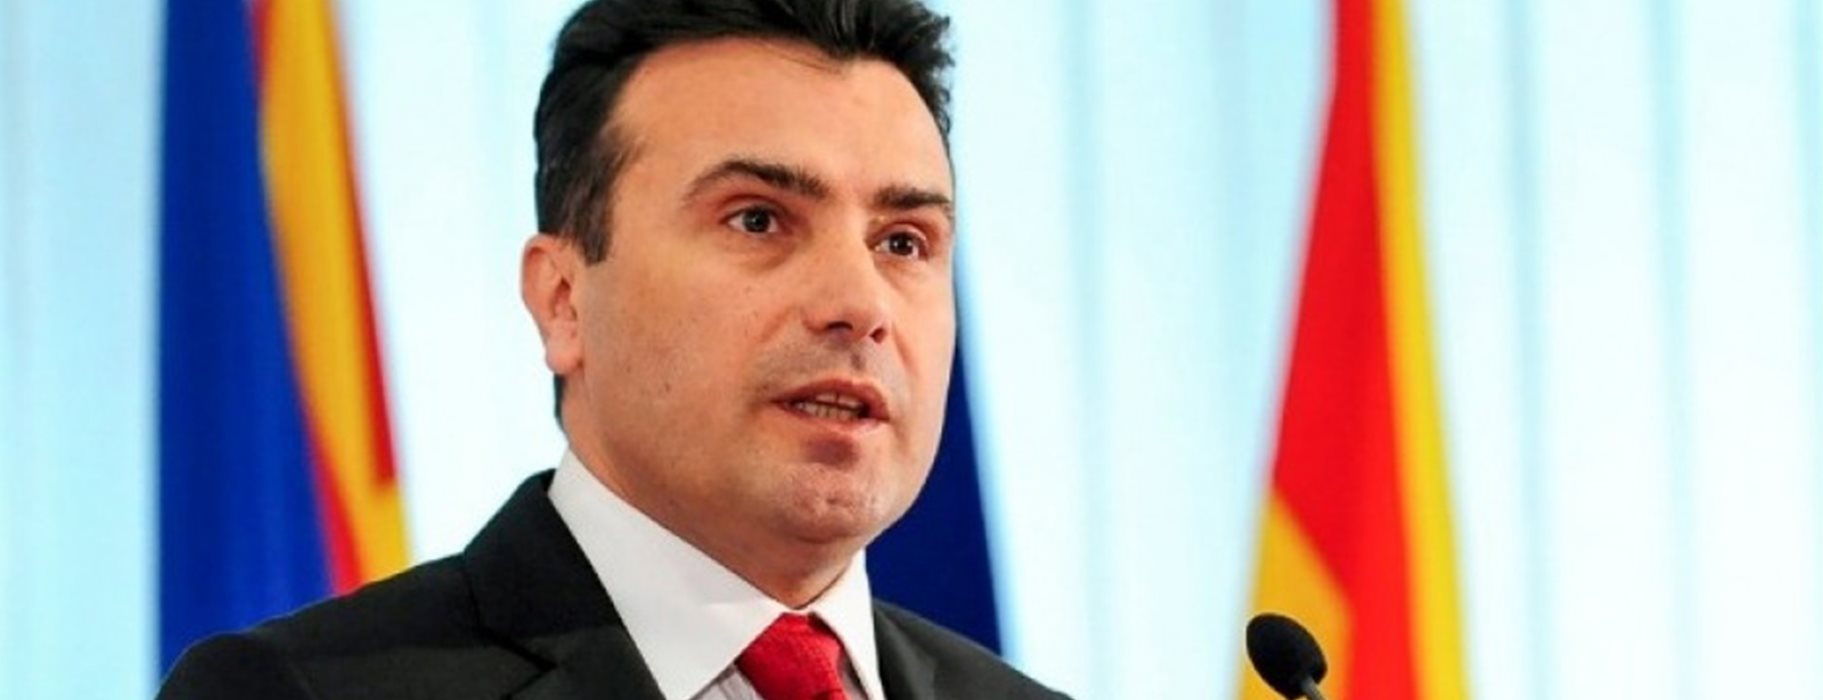 Σκόπια: Η παραίτηση Ζάεφ και οι πρόωρες εκλογές στις 12 Απριλίου – Τι έγινε στη σύσκεψη των πολιτικών αρχηγών